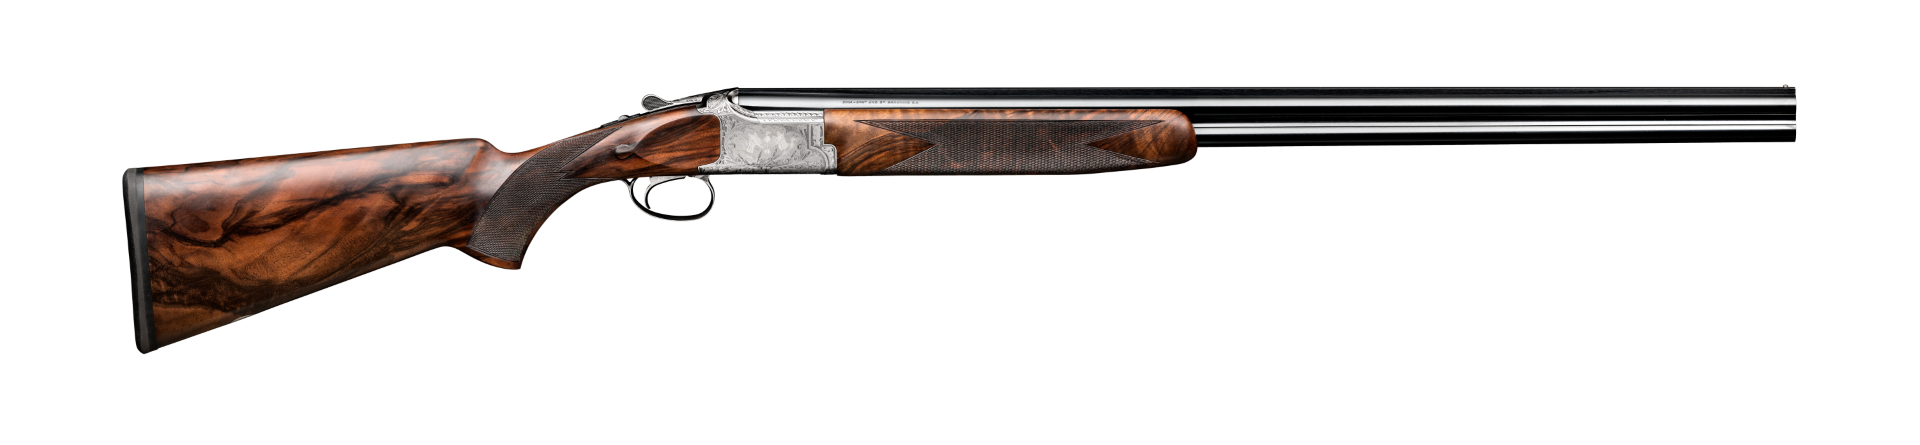 Browning Crown shotgun 